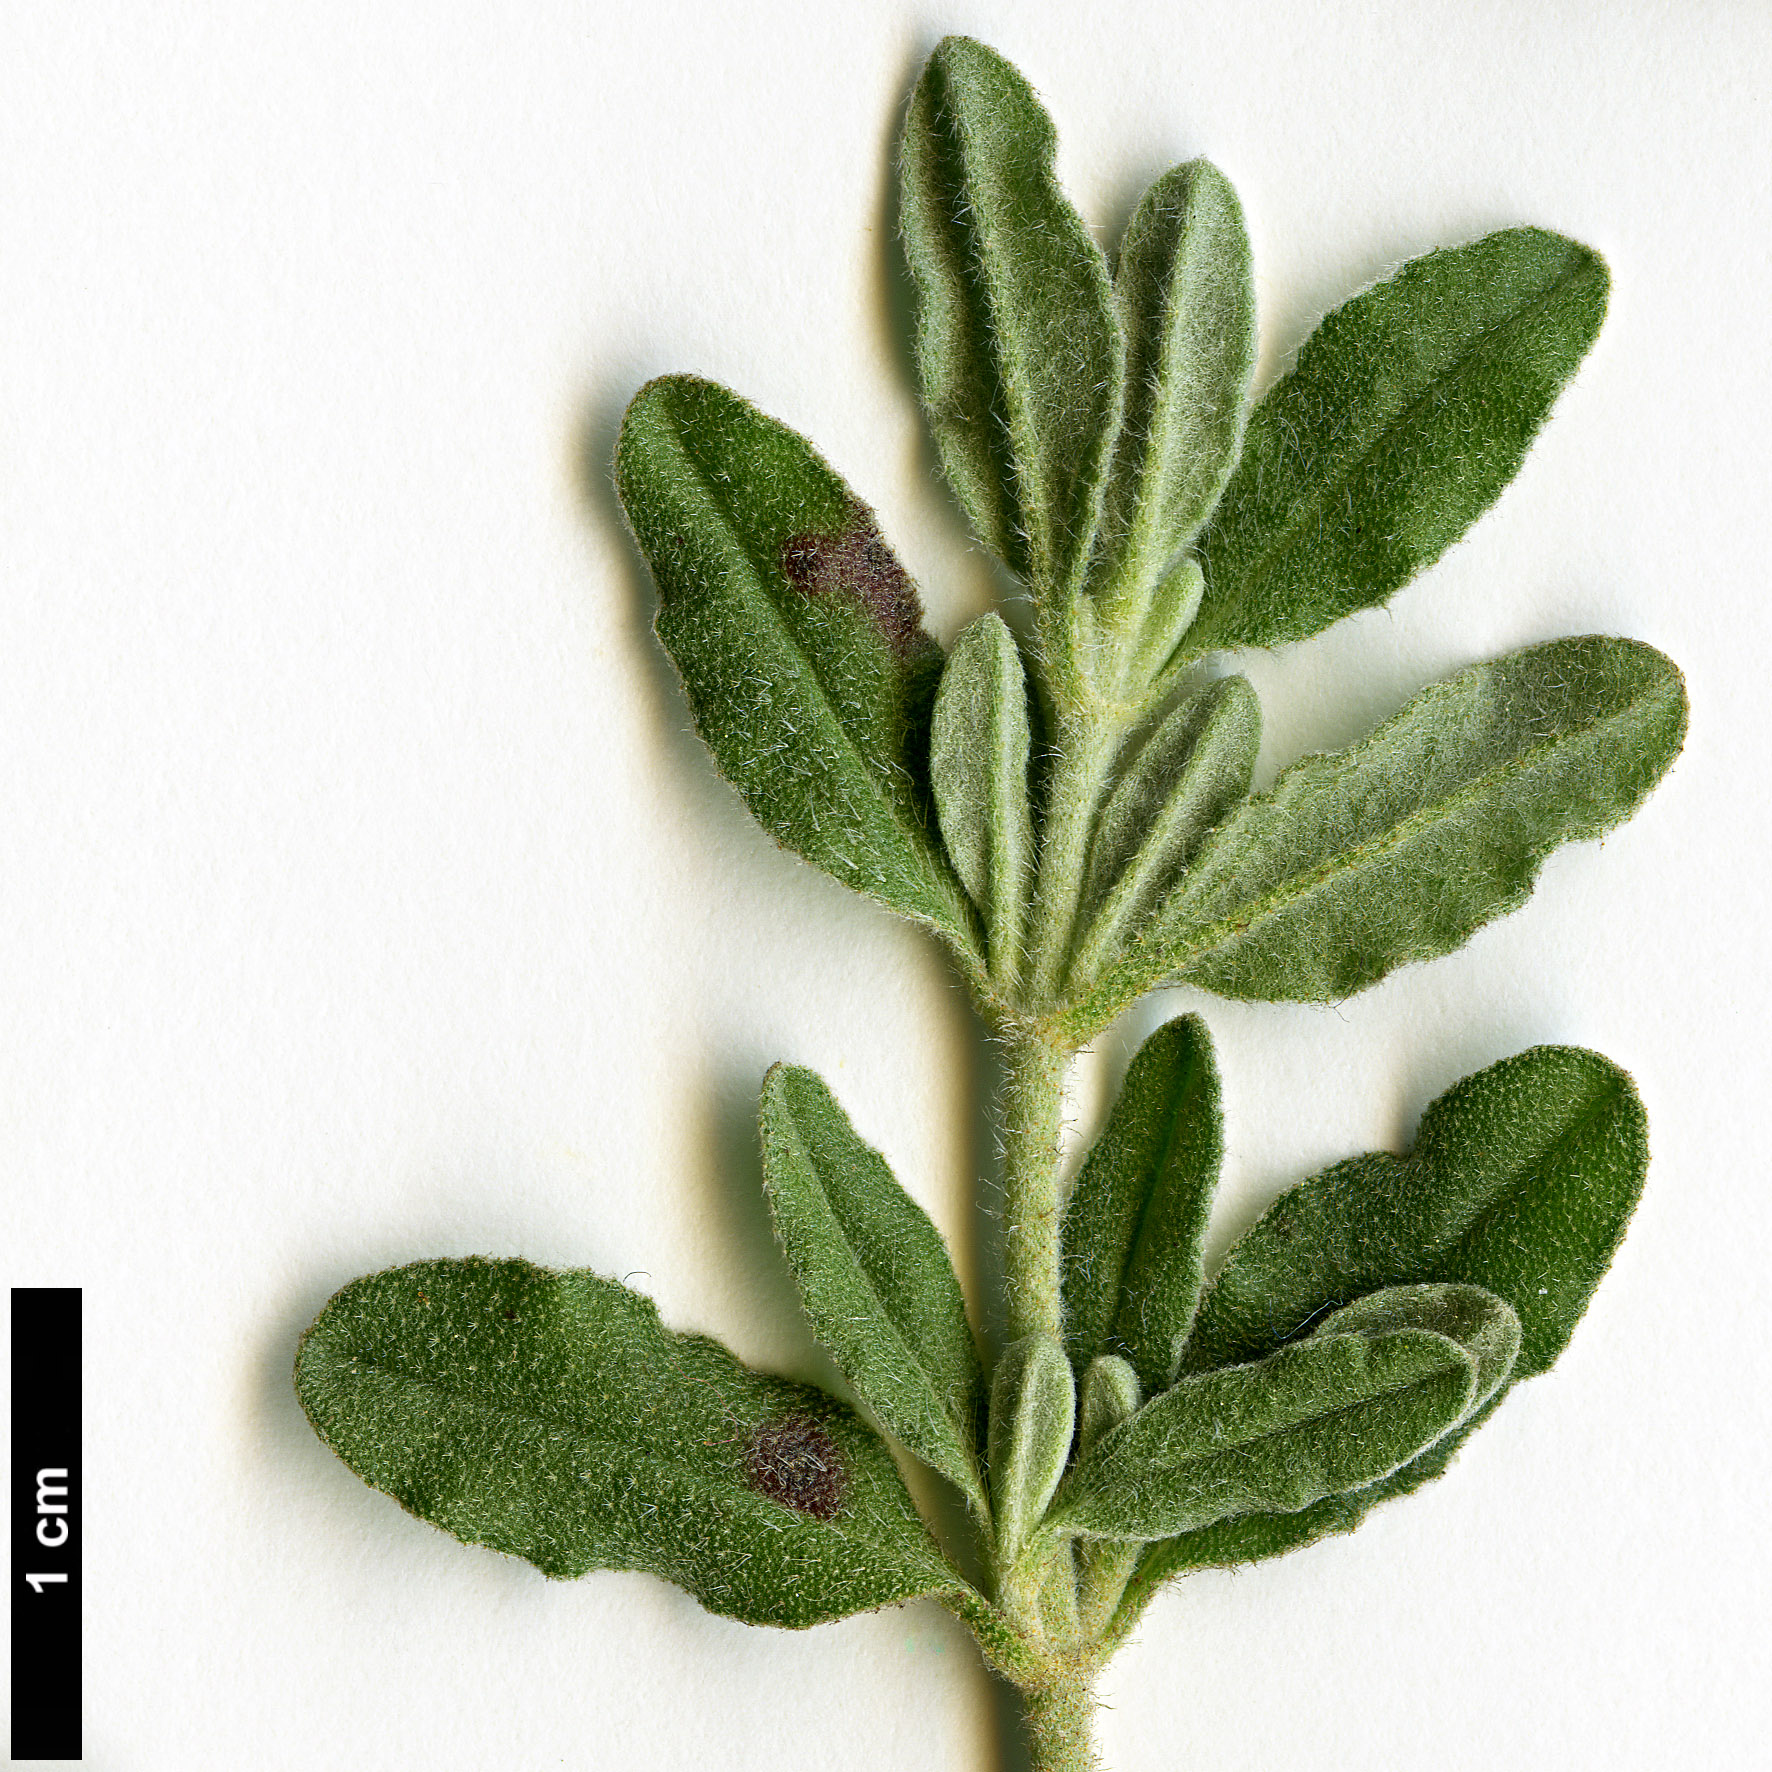 High resolution image: Family: Cistaceae - Genus: Halimium - Taxon: lasianthum - SpeciesSub: subsp. formosum